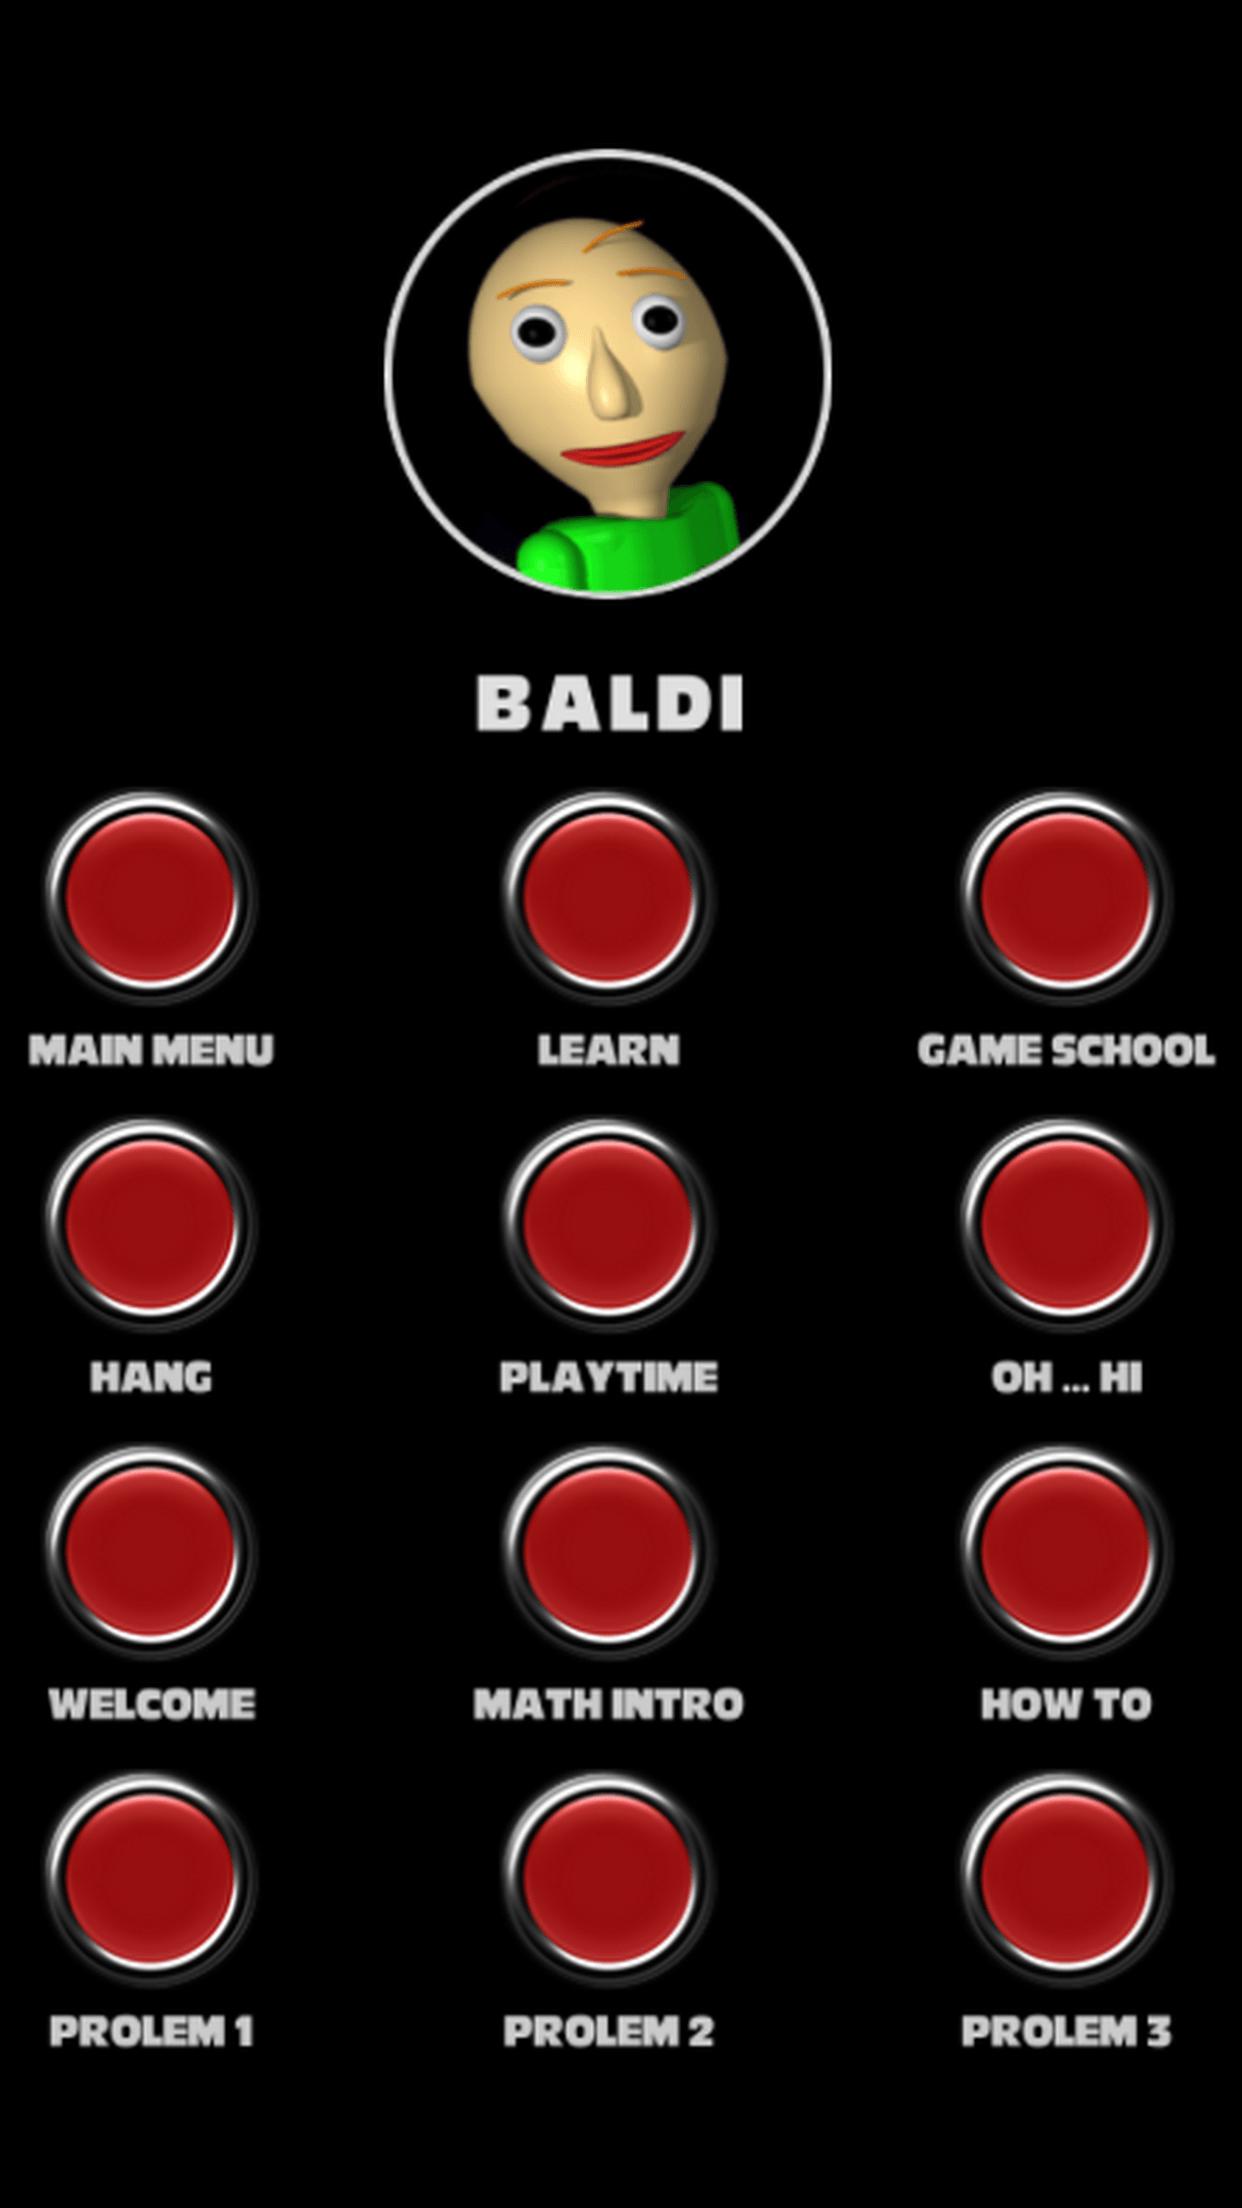 Baldi Basics Soundboard. Scratch Baldi Basics Soundboard. Baldis Basics Sound Board Plus Edition part1. Cloudy Copter Voices Baldi Basics Soundboard. Baldi soundboard